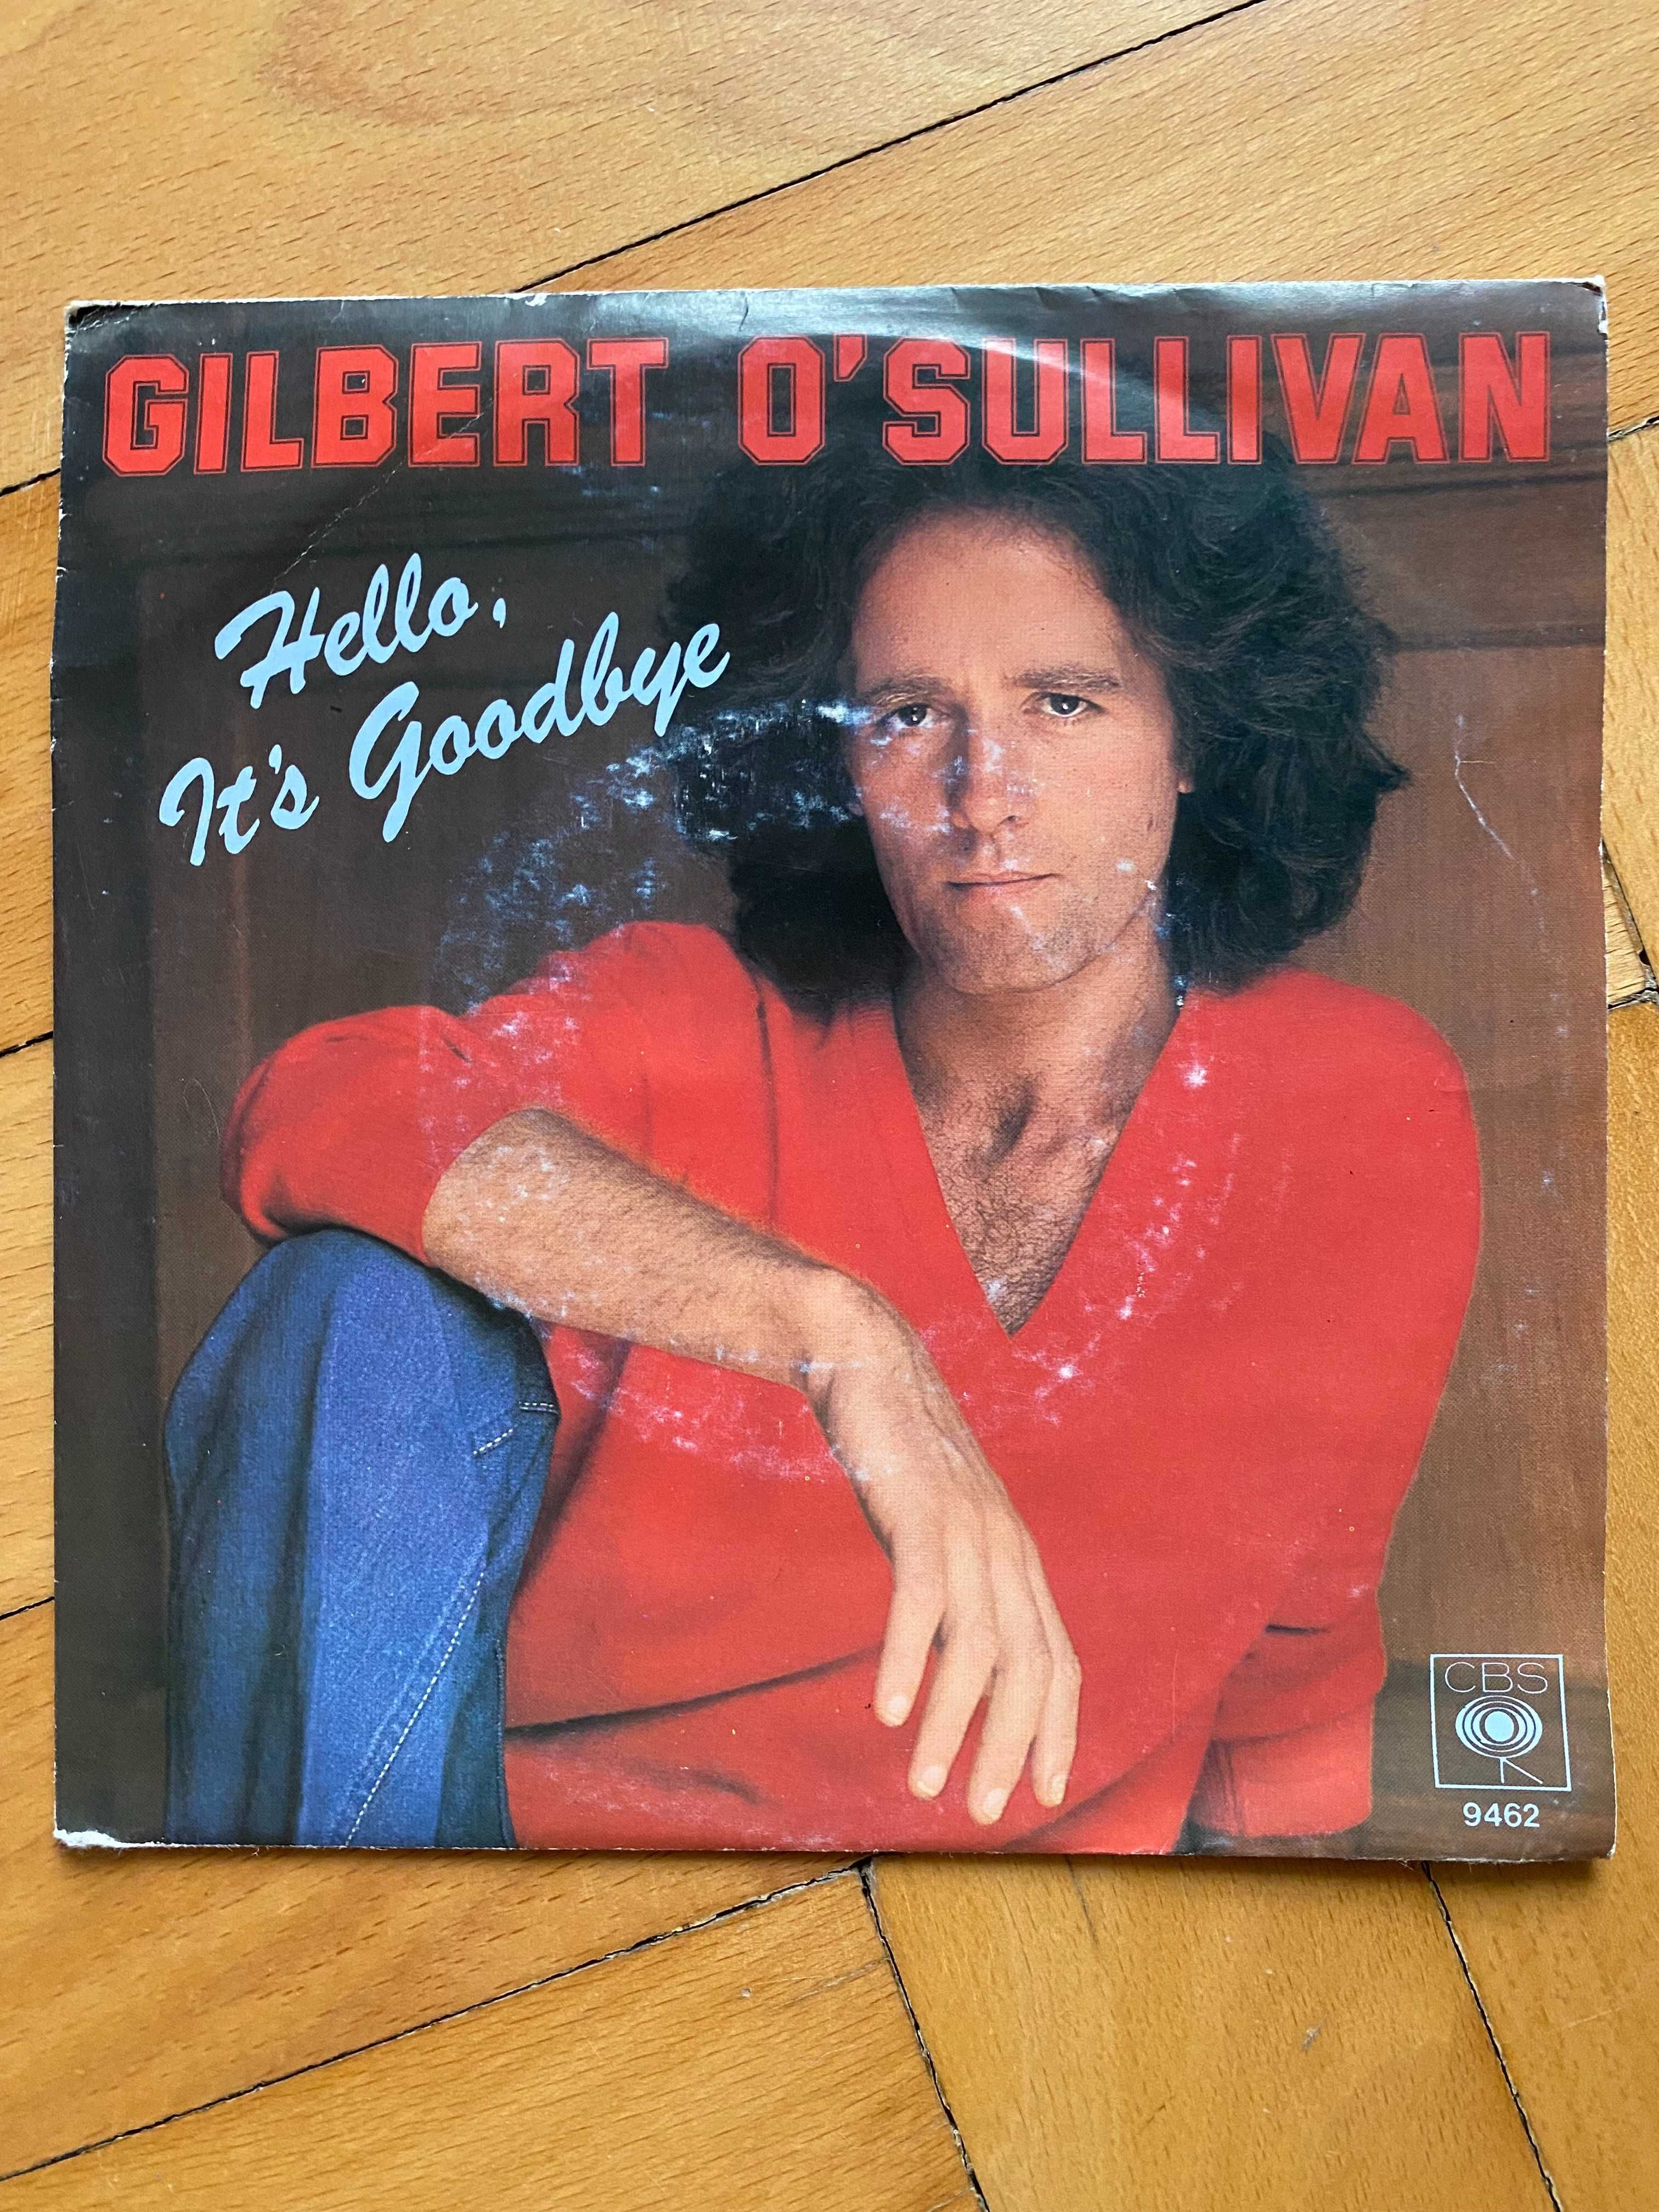 Gilbert O'Sullivan - Winyl 7' - 1981